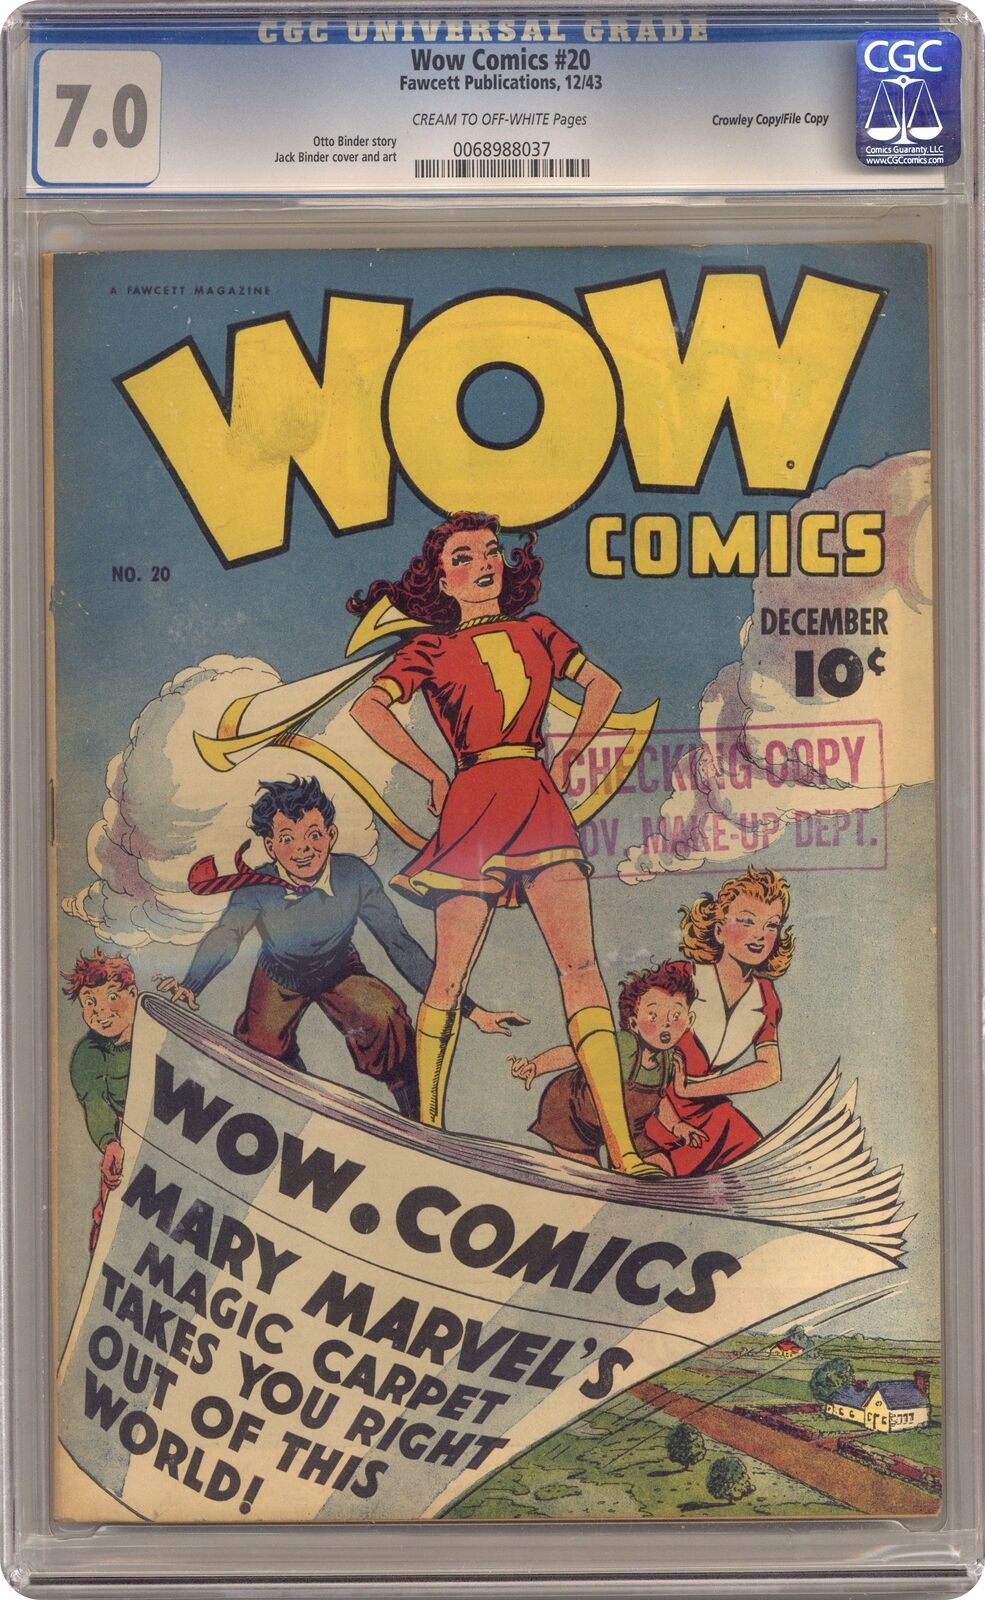 Wow Comics #20 CGC 7.0 Crowley 1943 0068988037